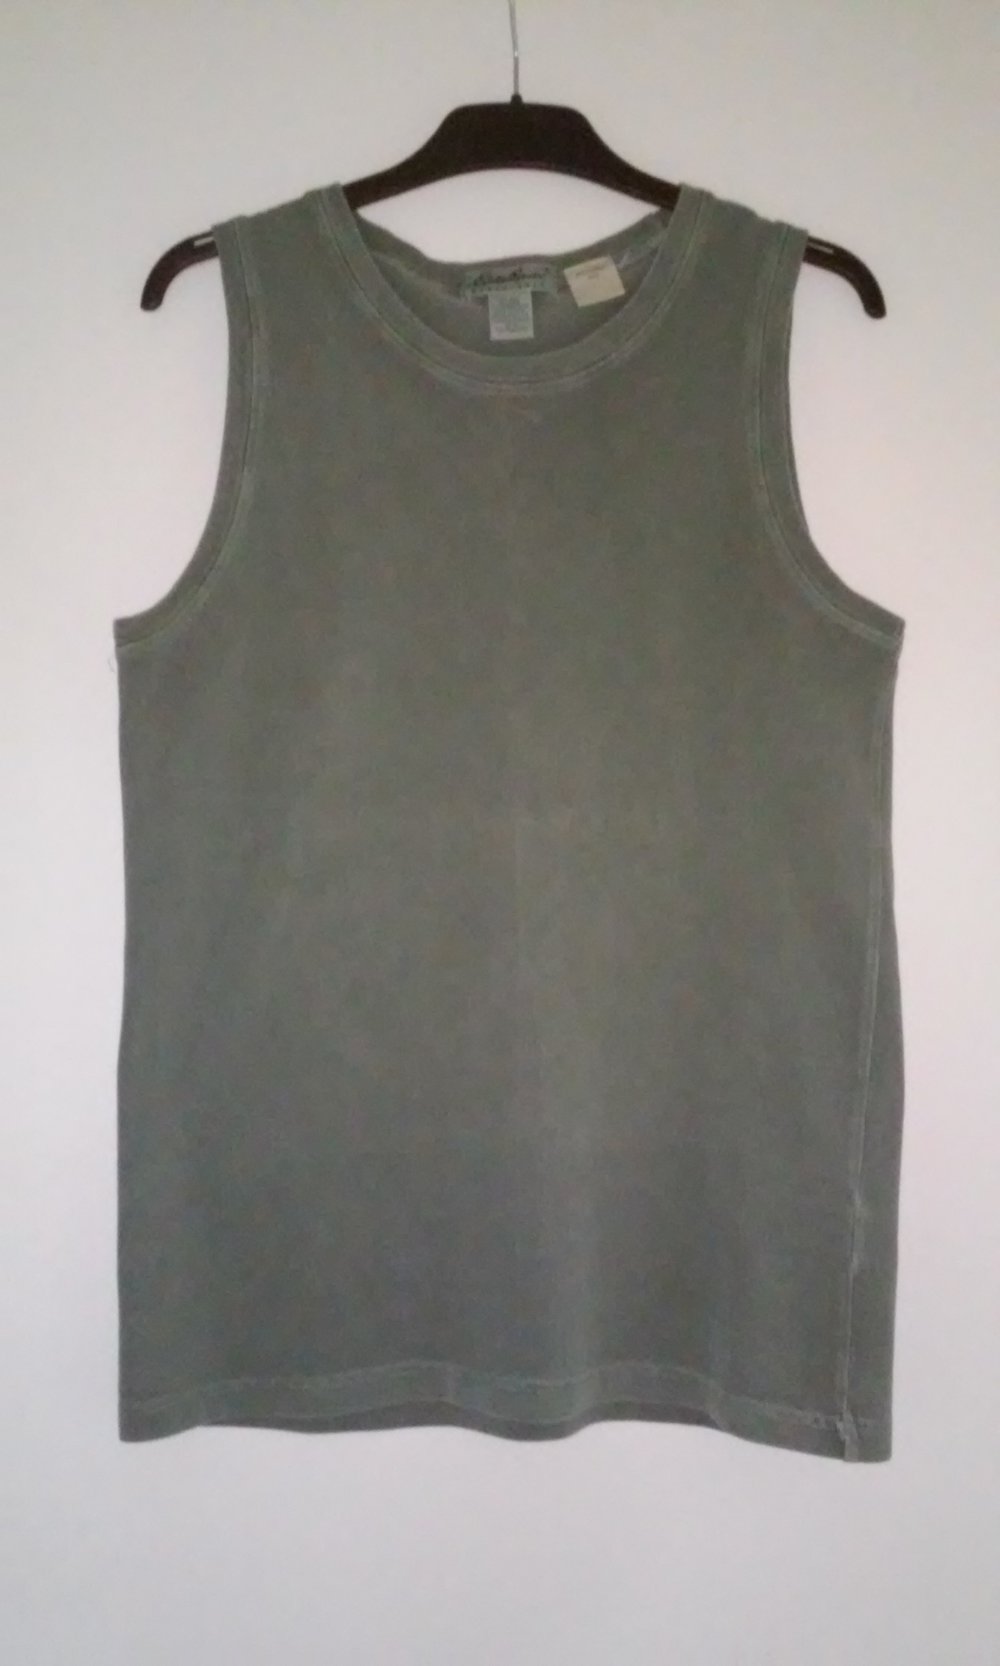 Eddie Bauer Damen Tanktop Shirt Top in denim/olivgrün Made in USA (erheblich günstiger)